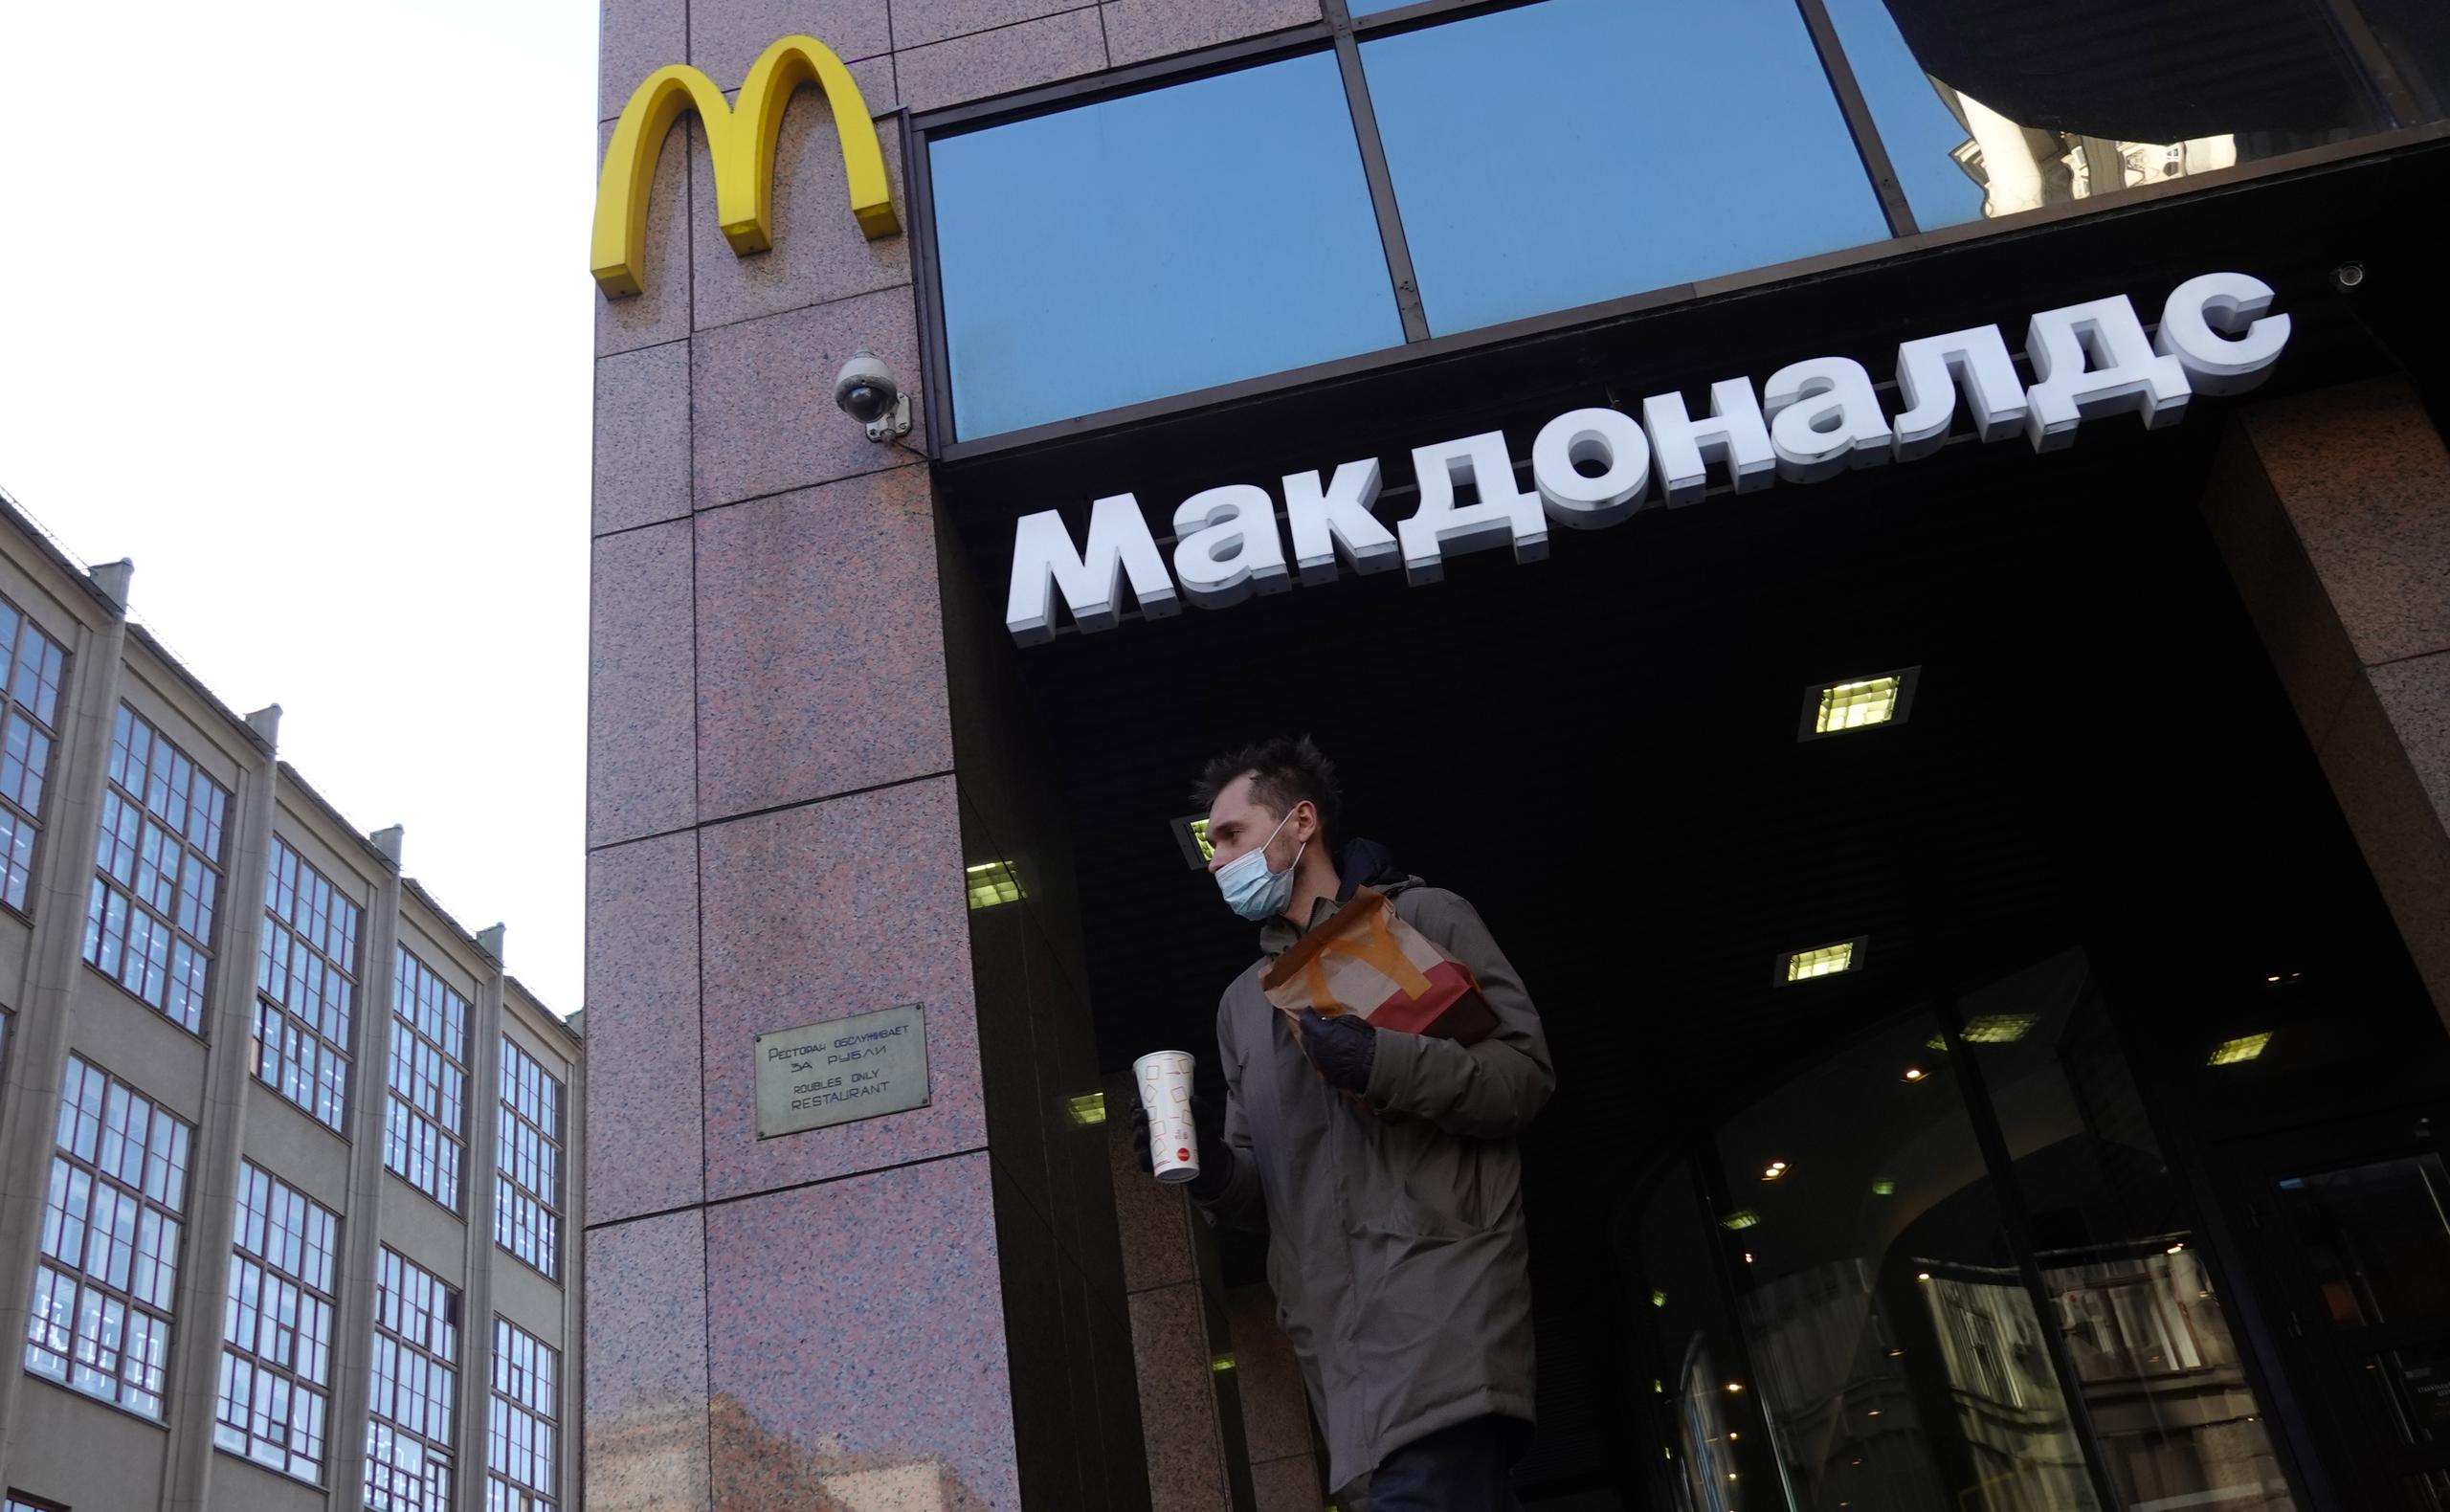 El pasado 8 de marzo McDonald’s ya anunció que cesaba temporalmente su negocio en Rusia y que cerraba temporalmente sus alrededor de 850 restaurantes tras el inicio de la invasión rusa de Ucrania.